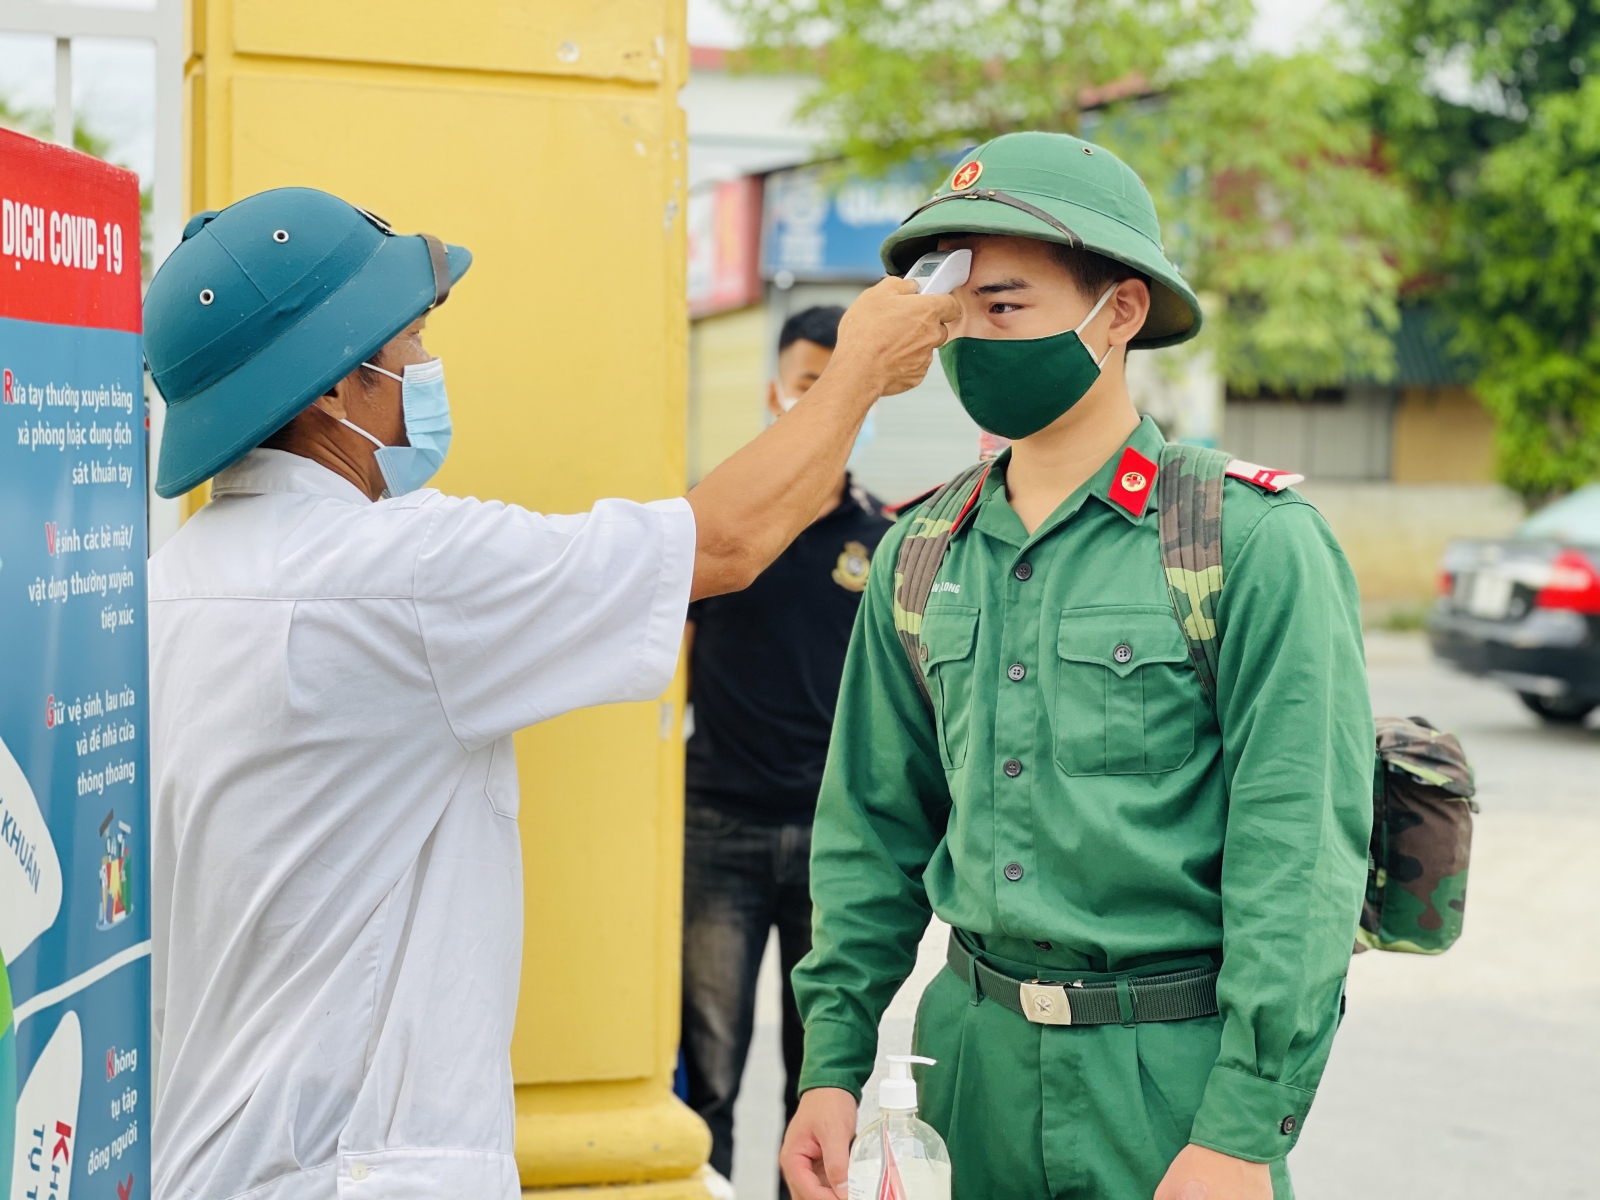 Hình ảnh thí sinh Hà Tĩnh lên đường tới Bắc Giang dự thi tốt nghiệp THPT đợt 2 - Ảnh minh hoạ 4